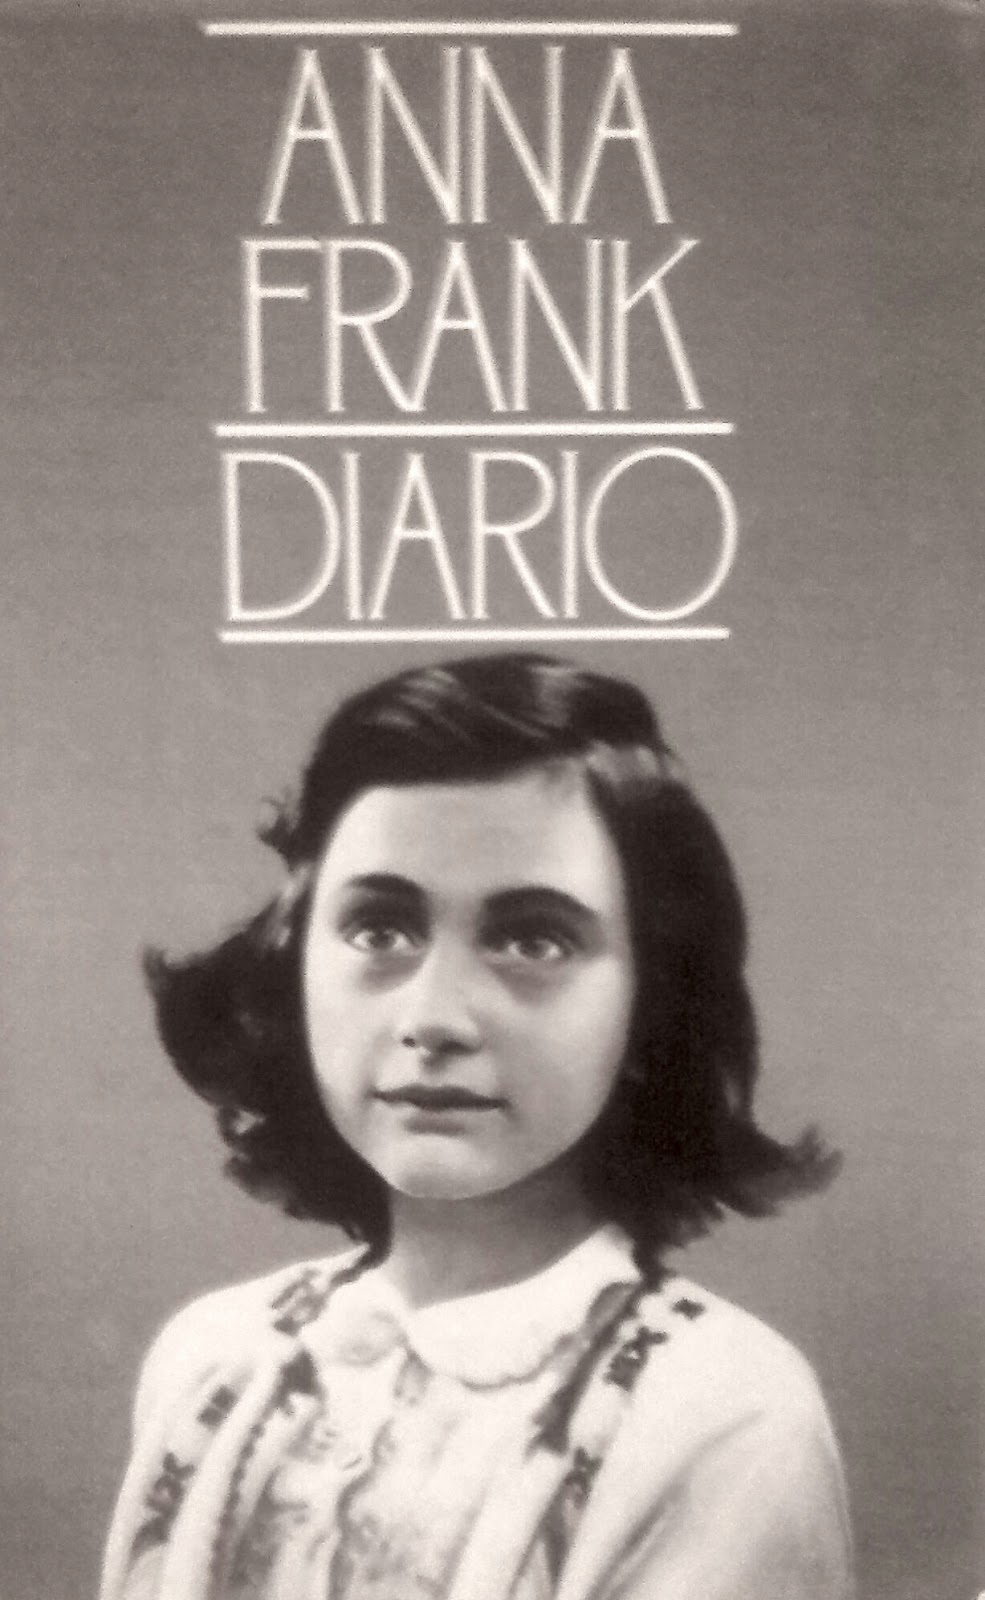 Books are my ikigai ANNA FRANK DIARIO Anna Frank (illustrazioni di Giovanni Muzzalini e grafica